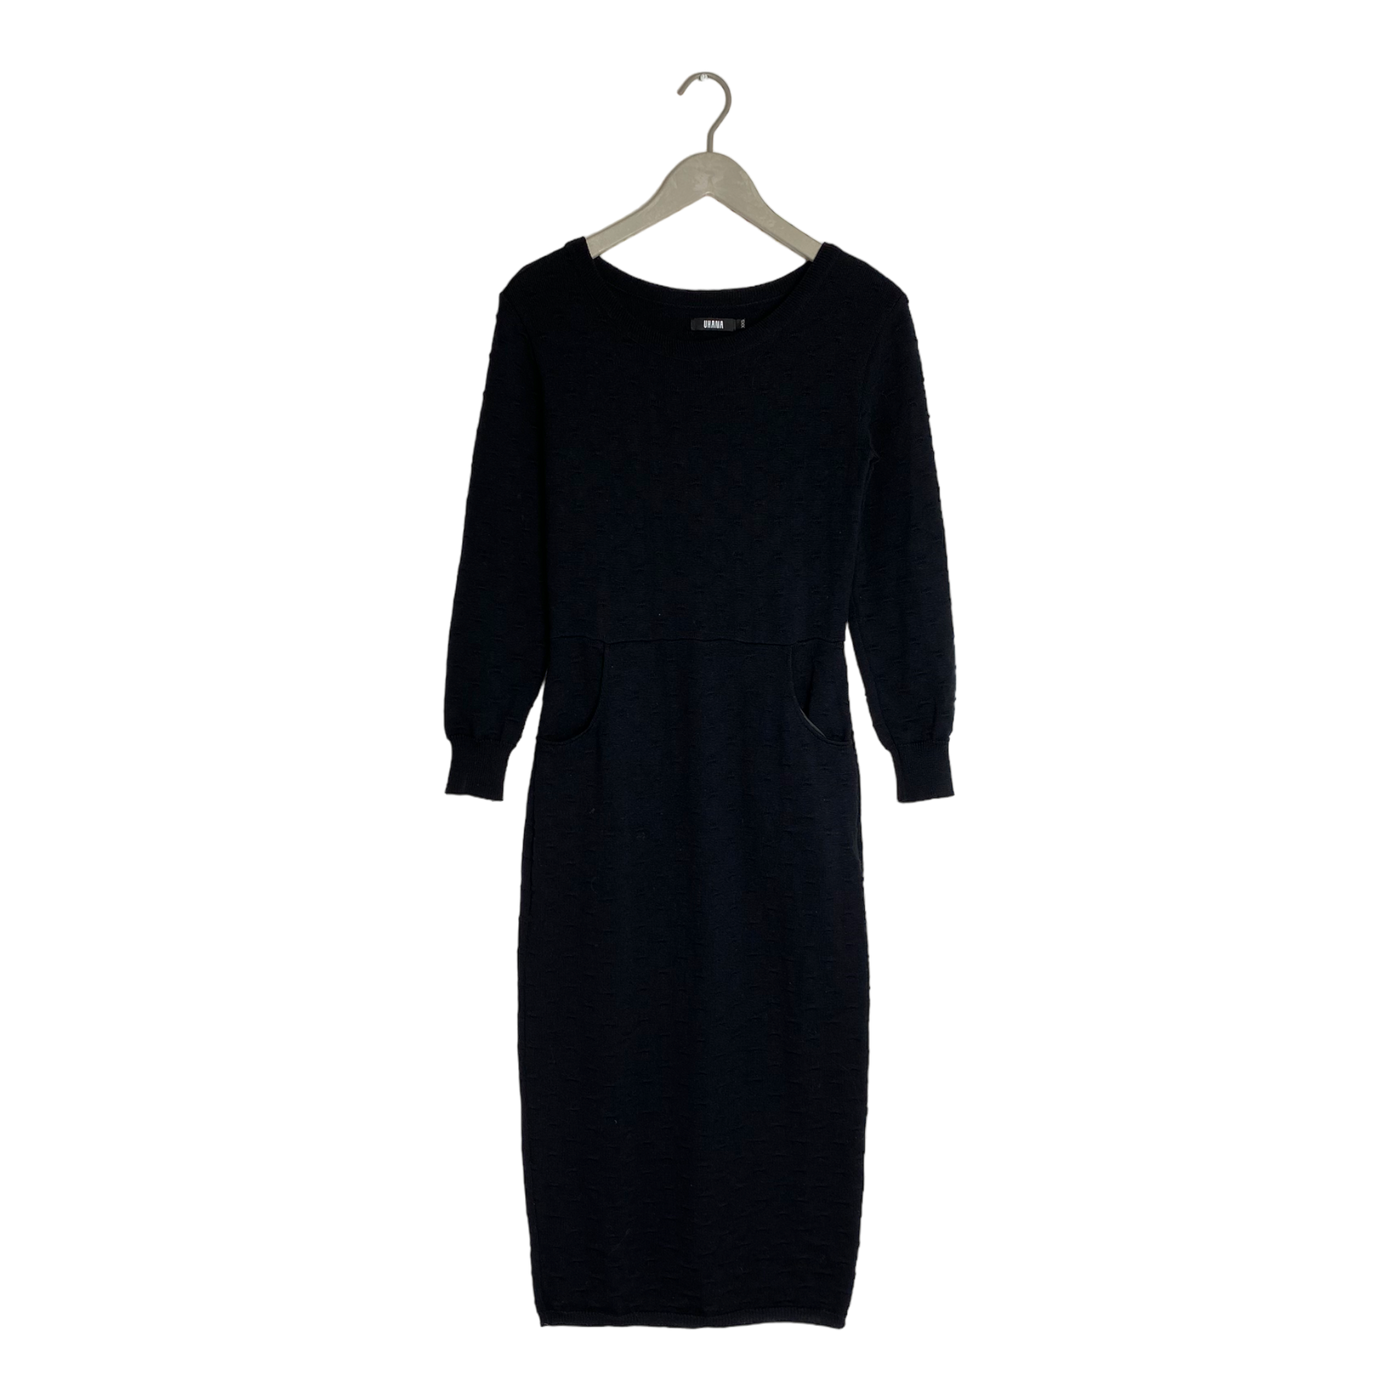 Uhana mirage knitted dress, black | woman XXS